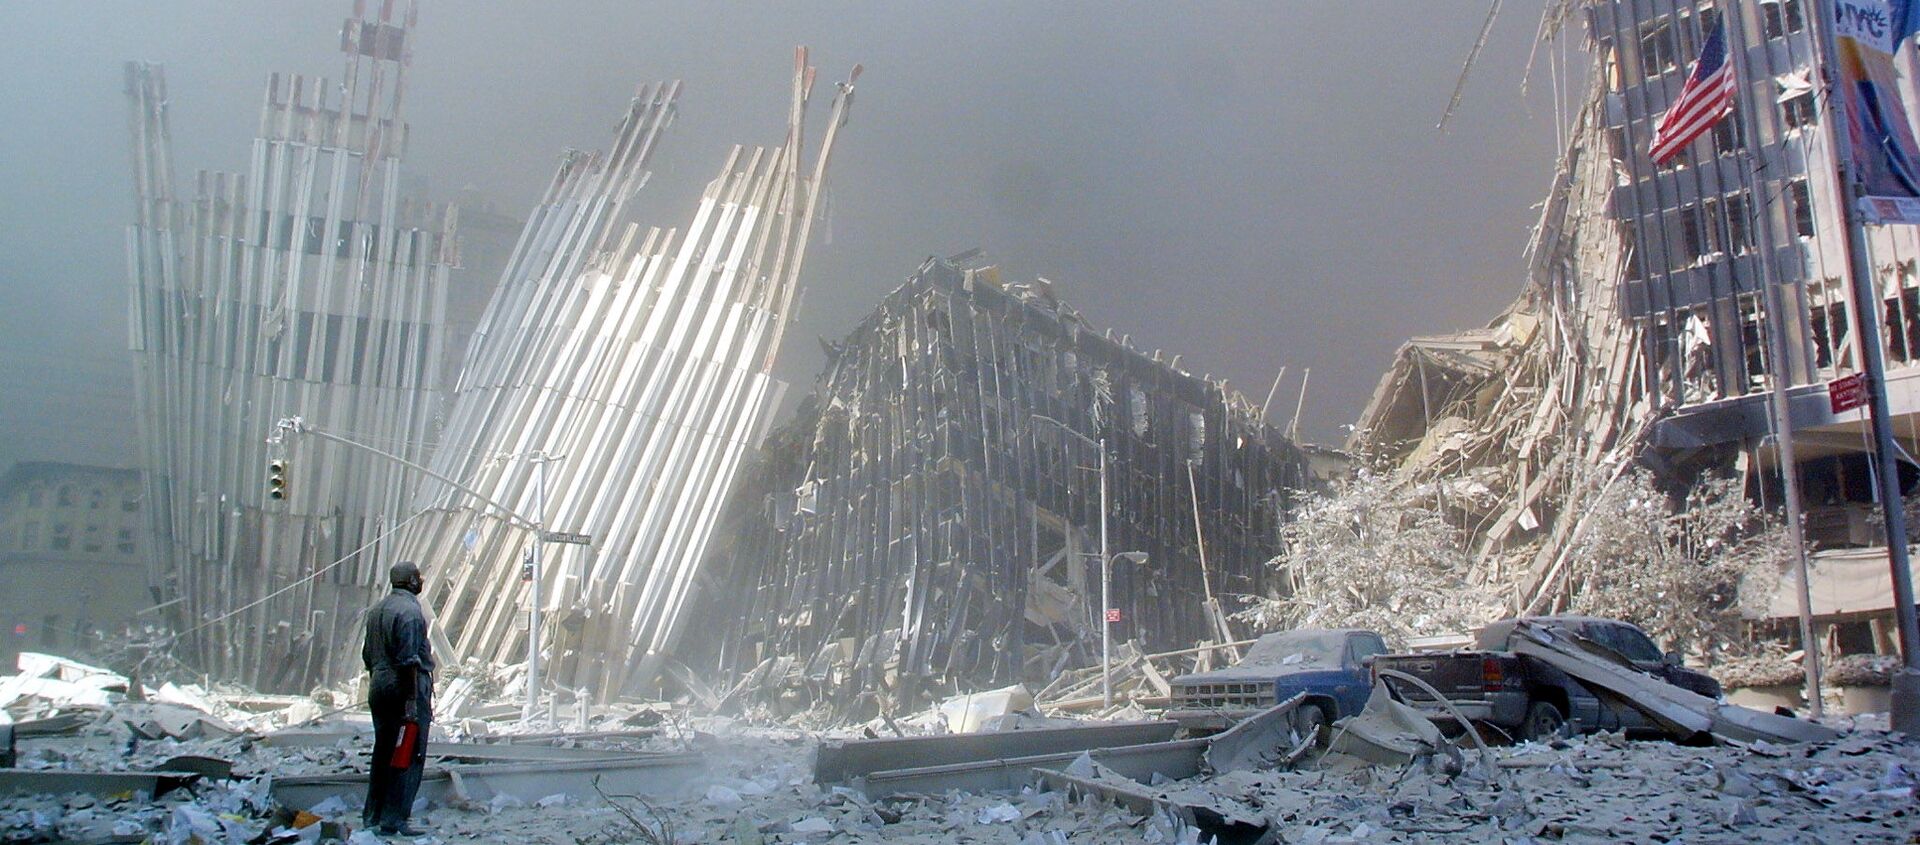 Човек на рушевинама Светског трговинског центра у Њујорку након терористичког напада 11. септембра 2001. године. - Sputnik Србија, 1920, 14.09.2019